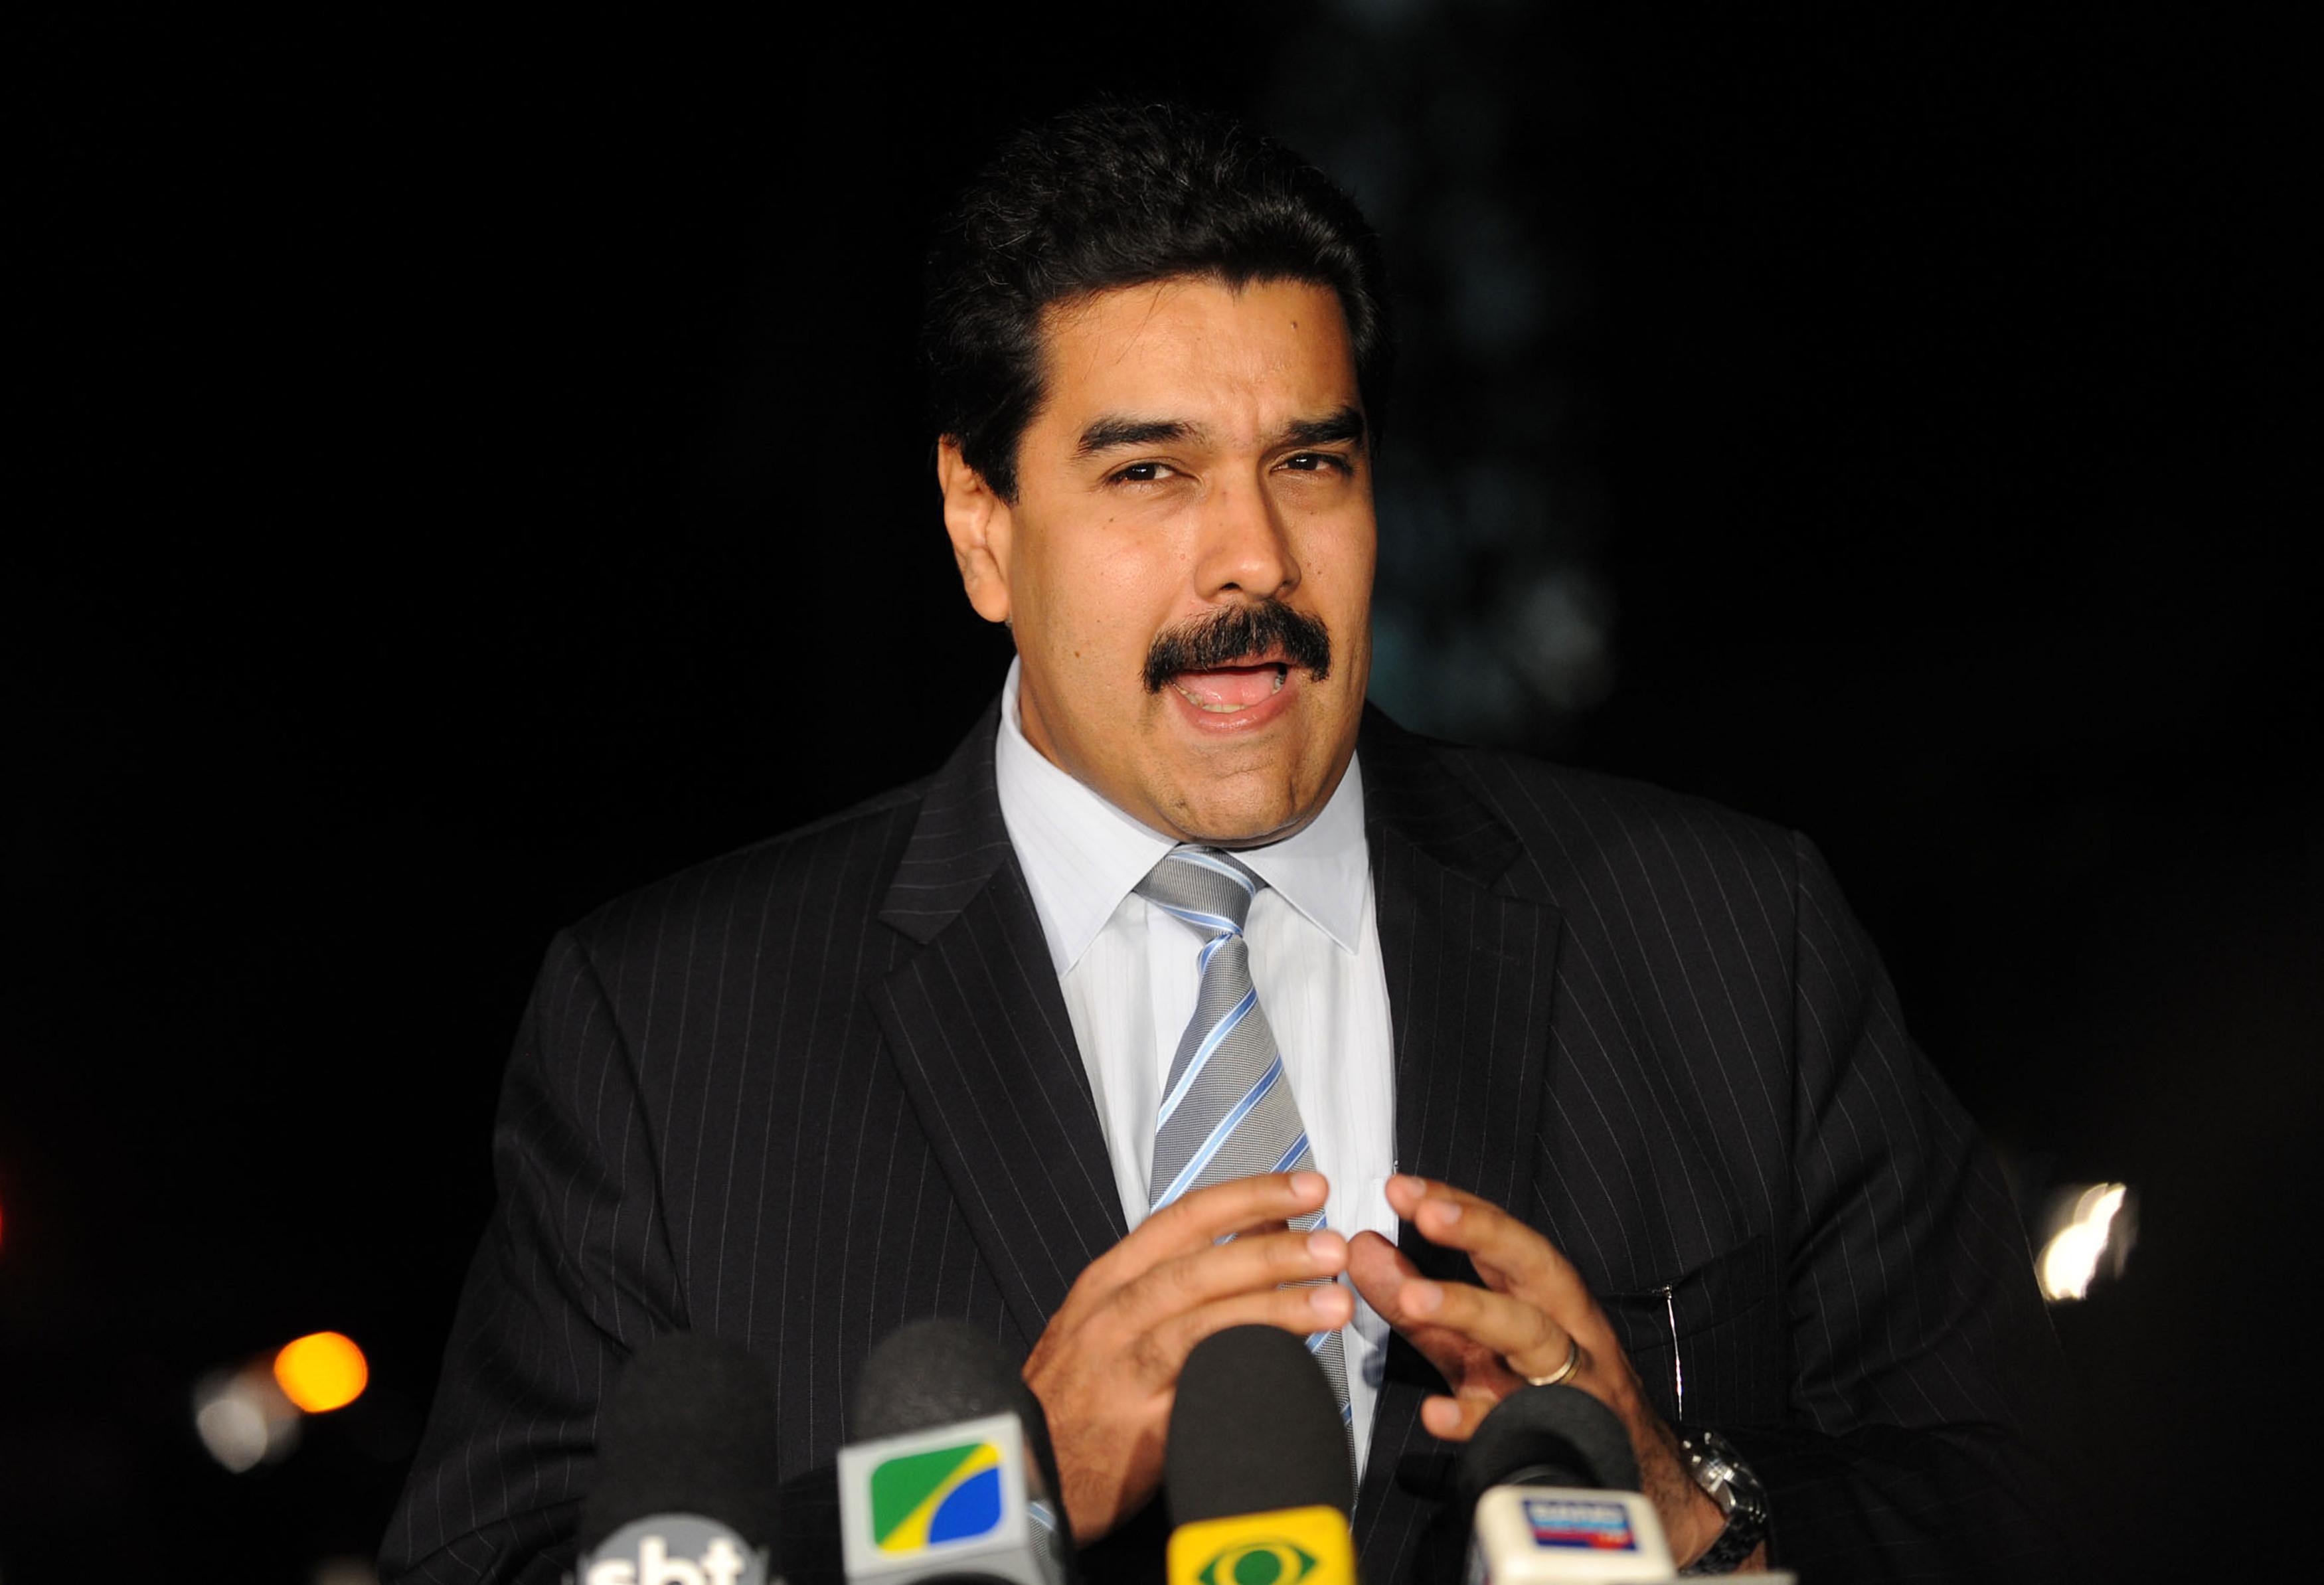 Países del G-7 piden a Maduro programar nuevas elecciones “libres y justas”